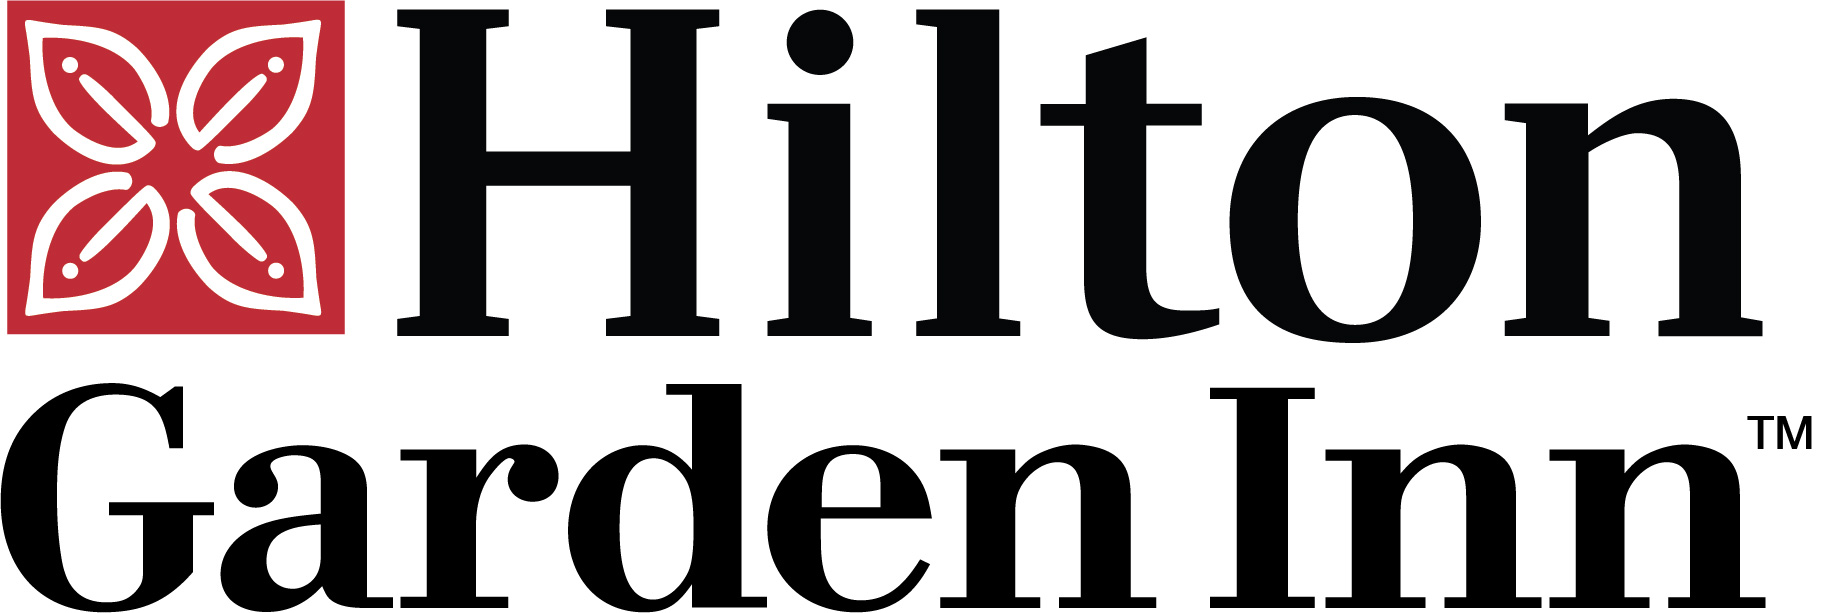 Hilton Garden Inn Logo